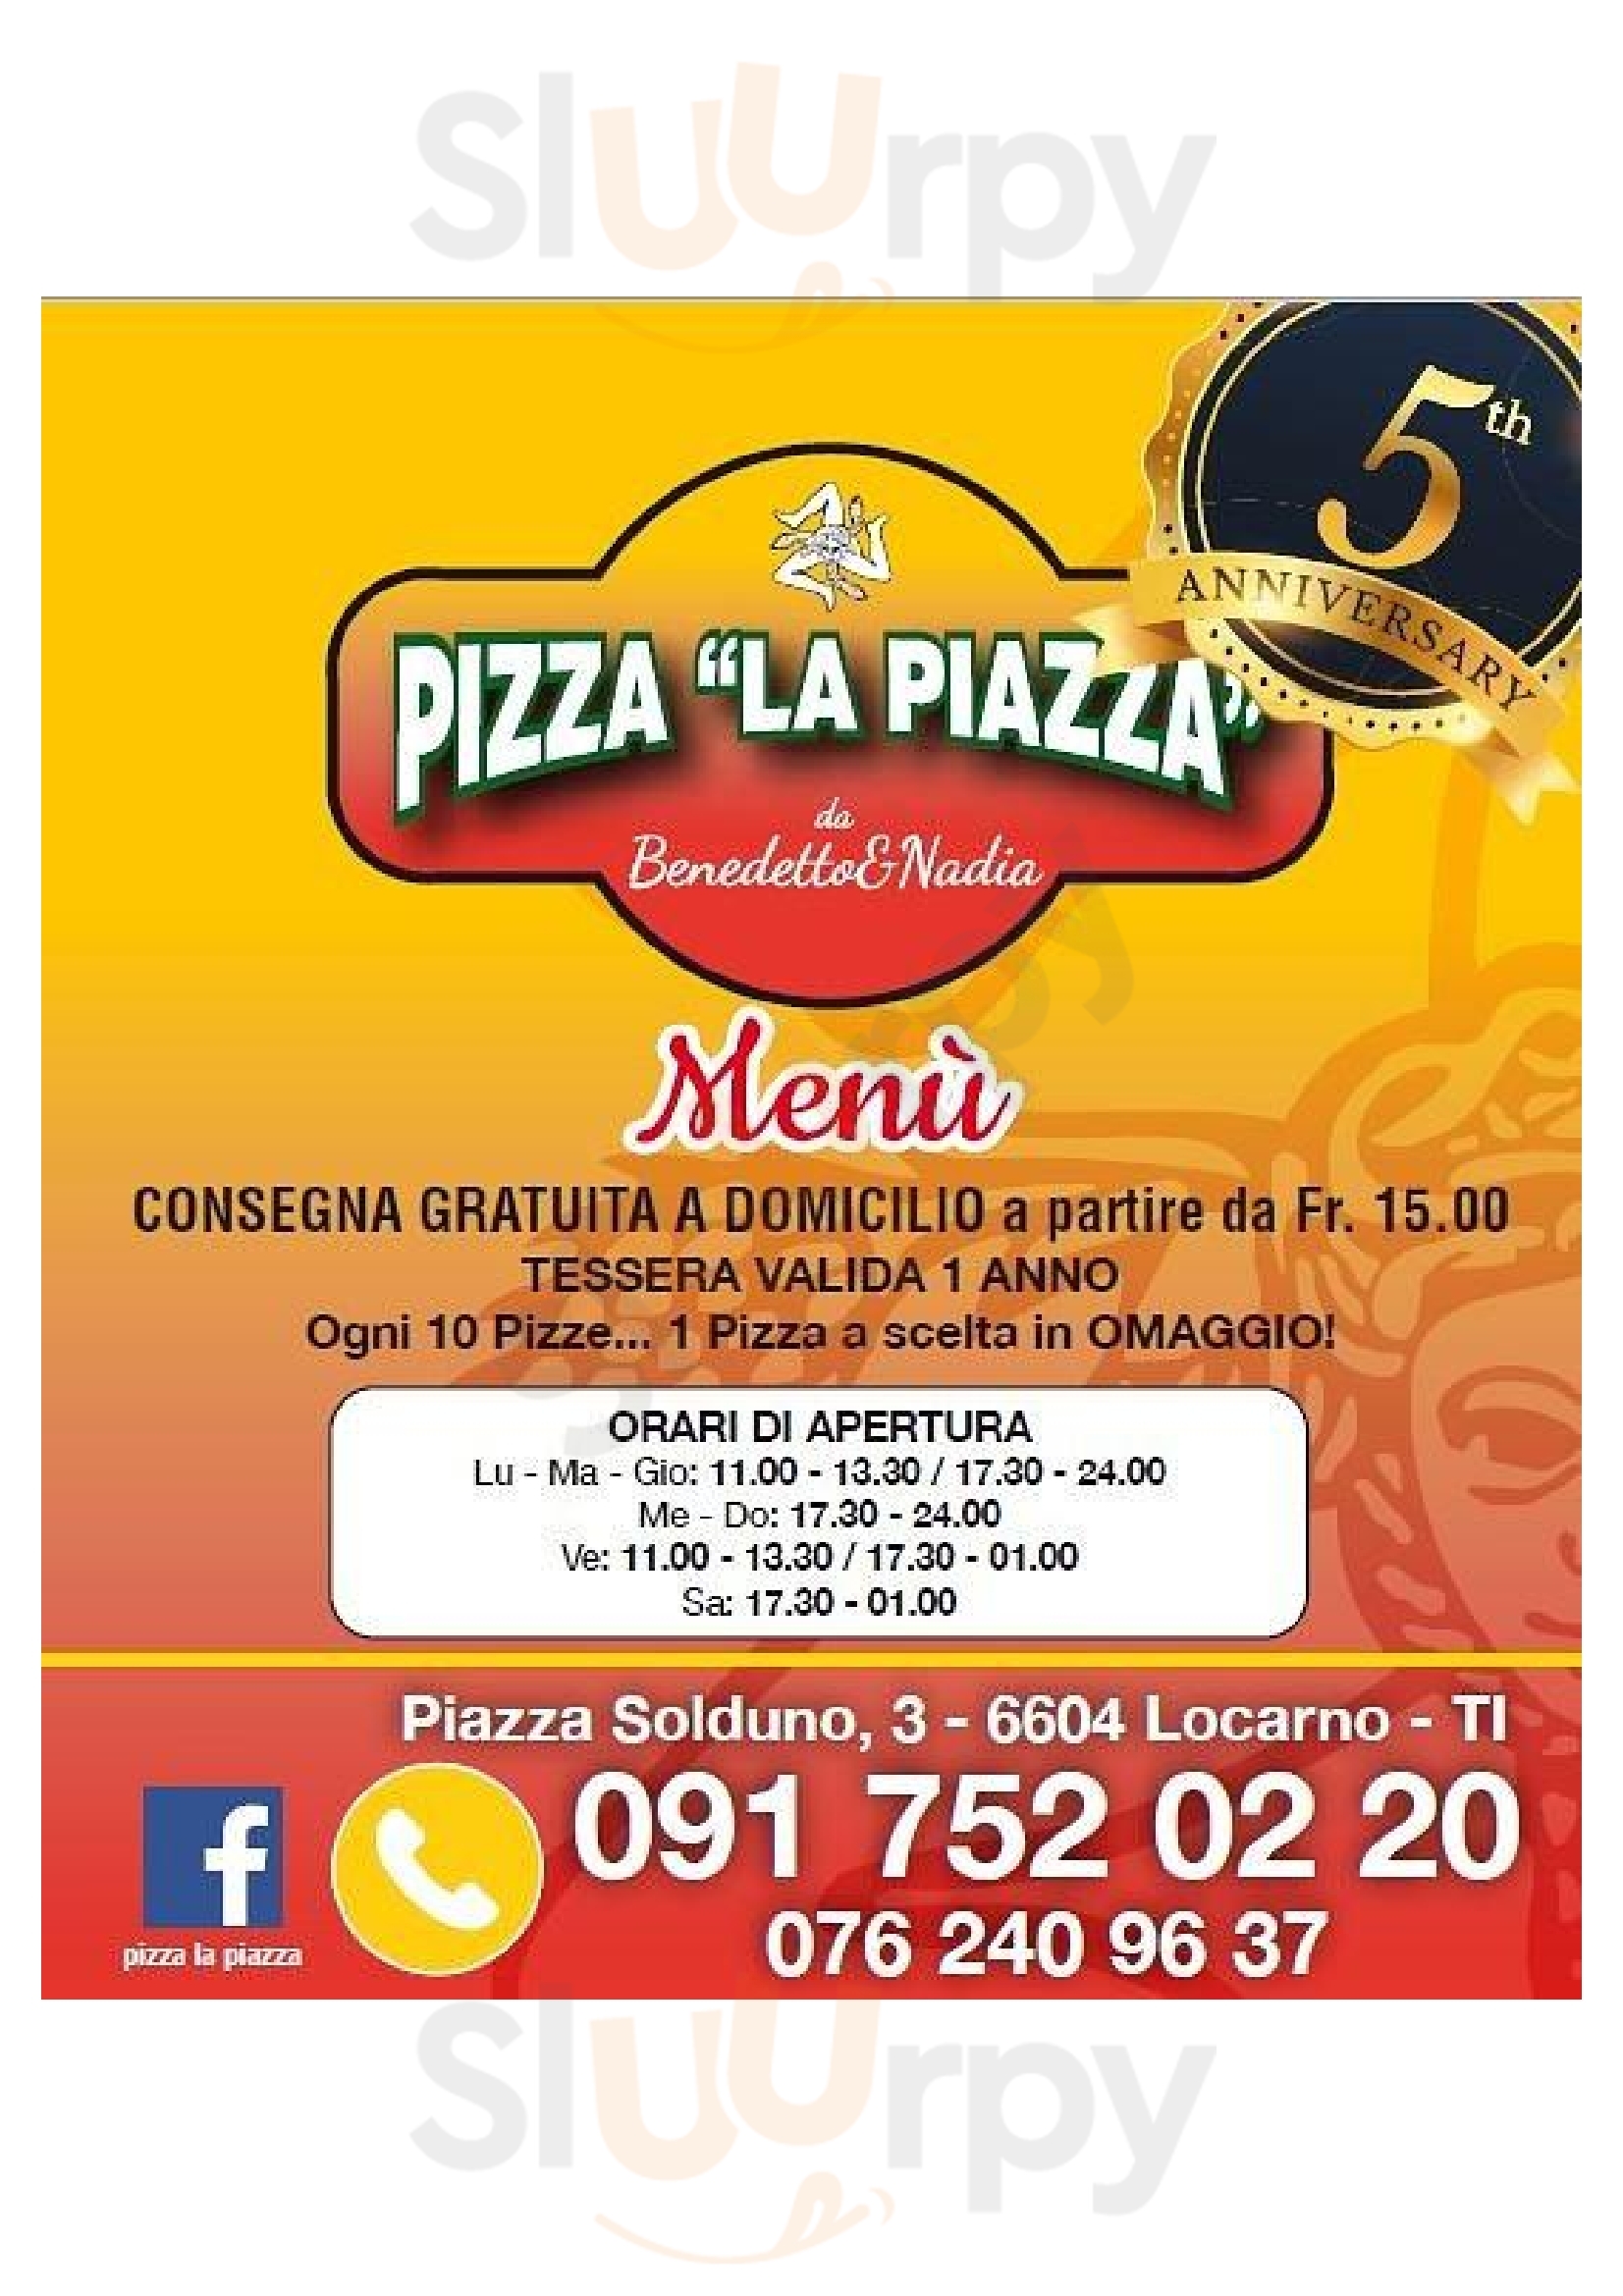 Pizza La Piazza Locarno Menu - 1